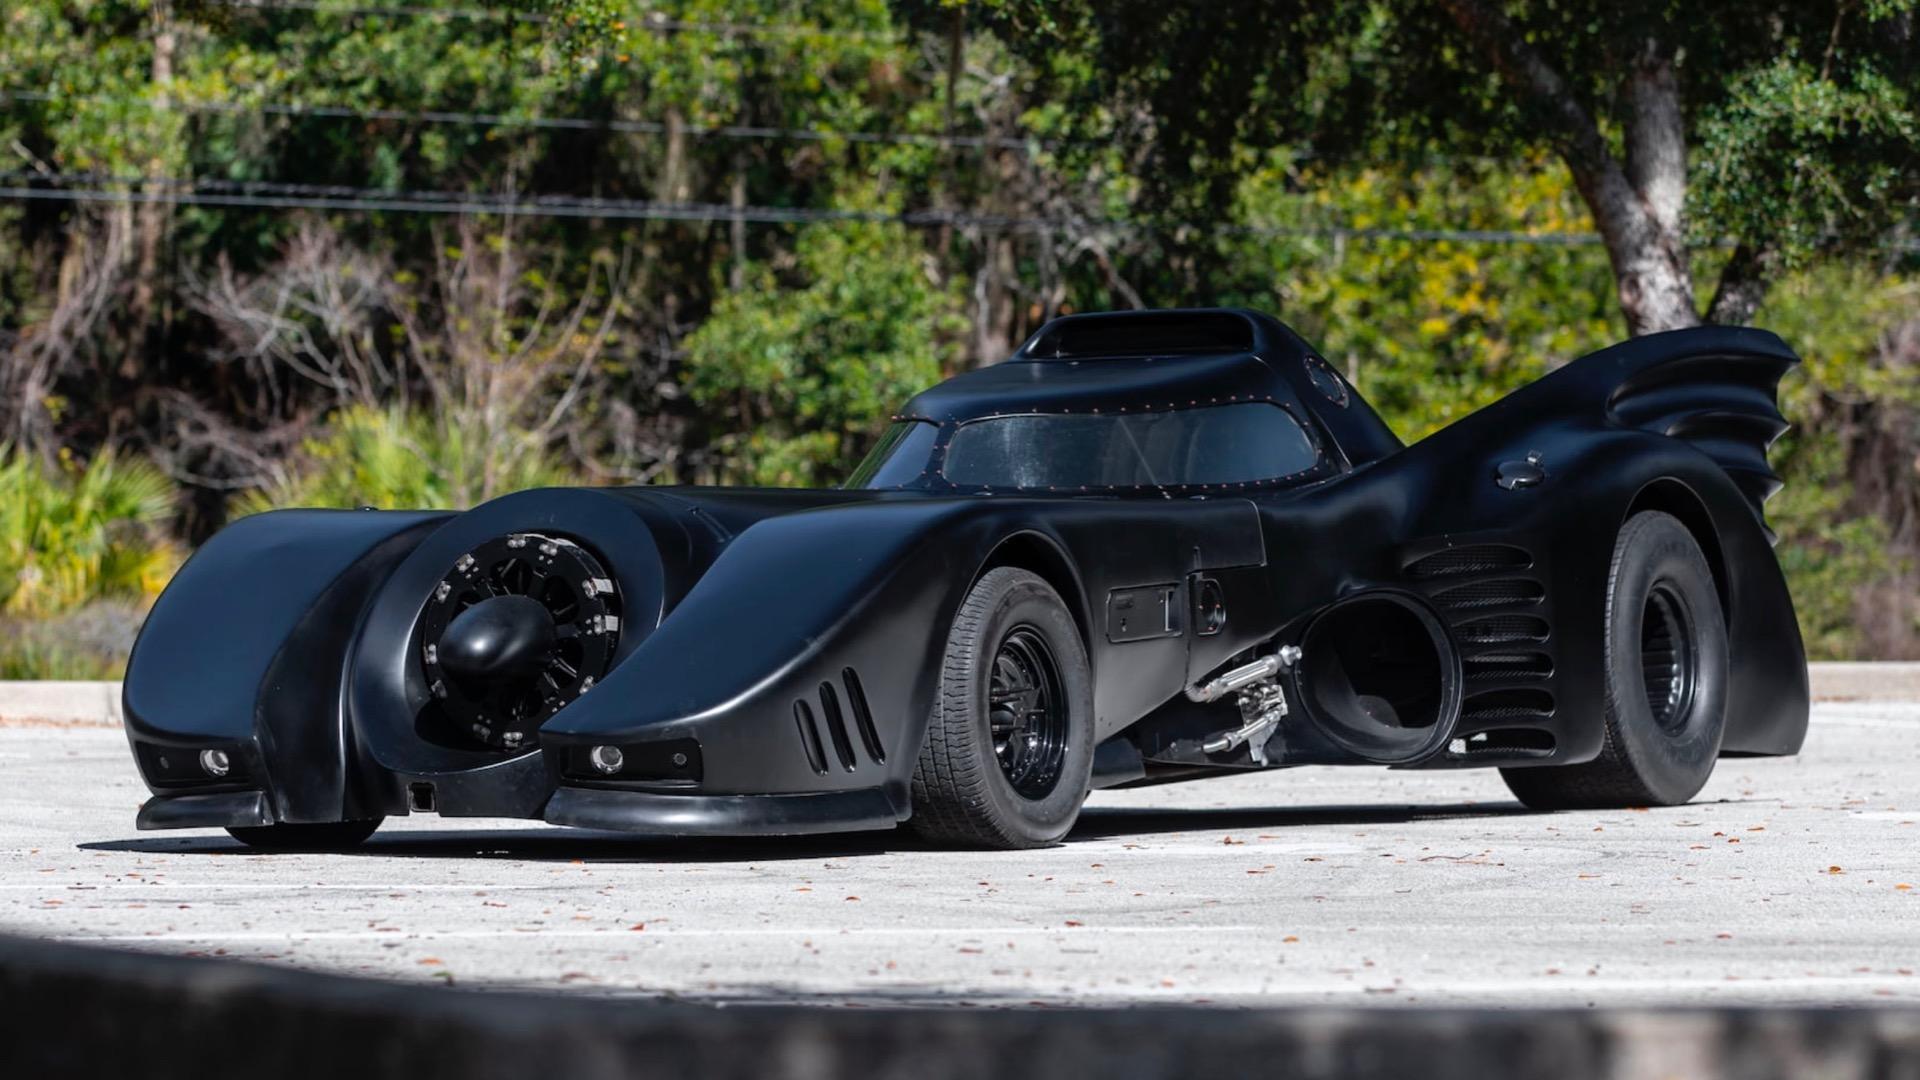 Batmobile replica photo via mecum auctions 100834533 h